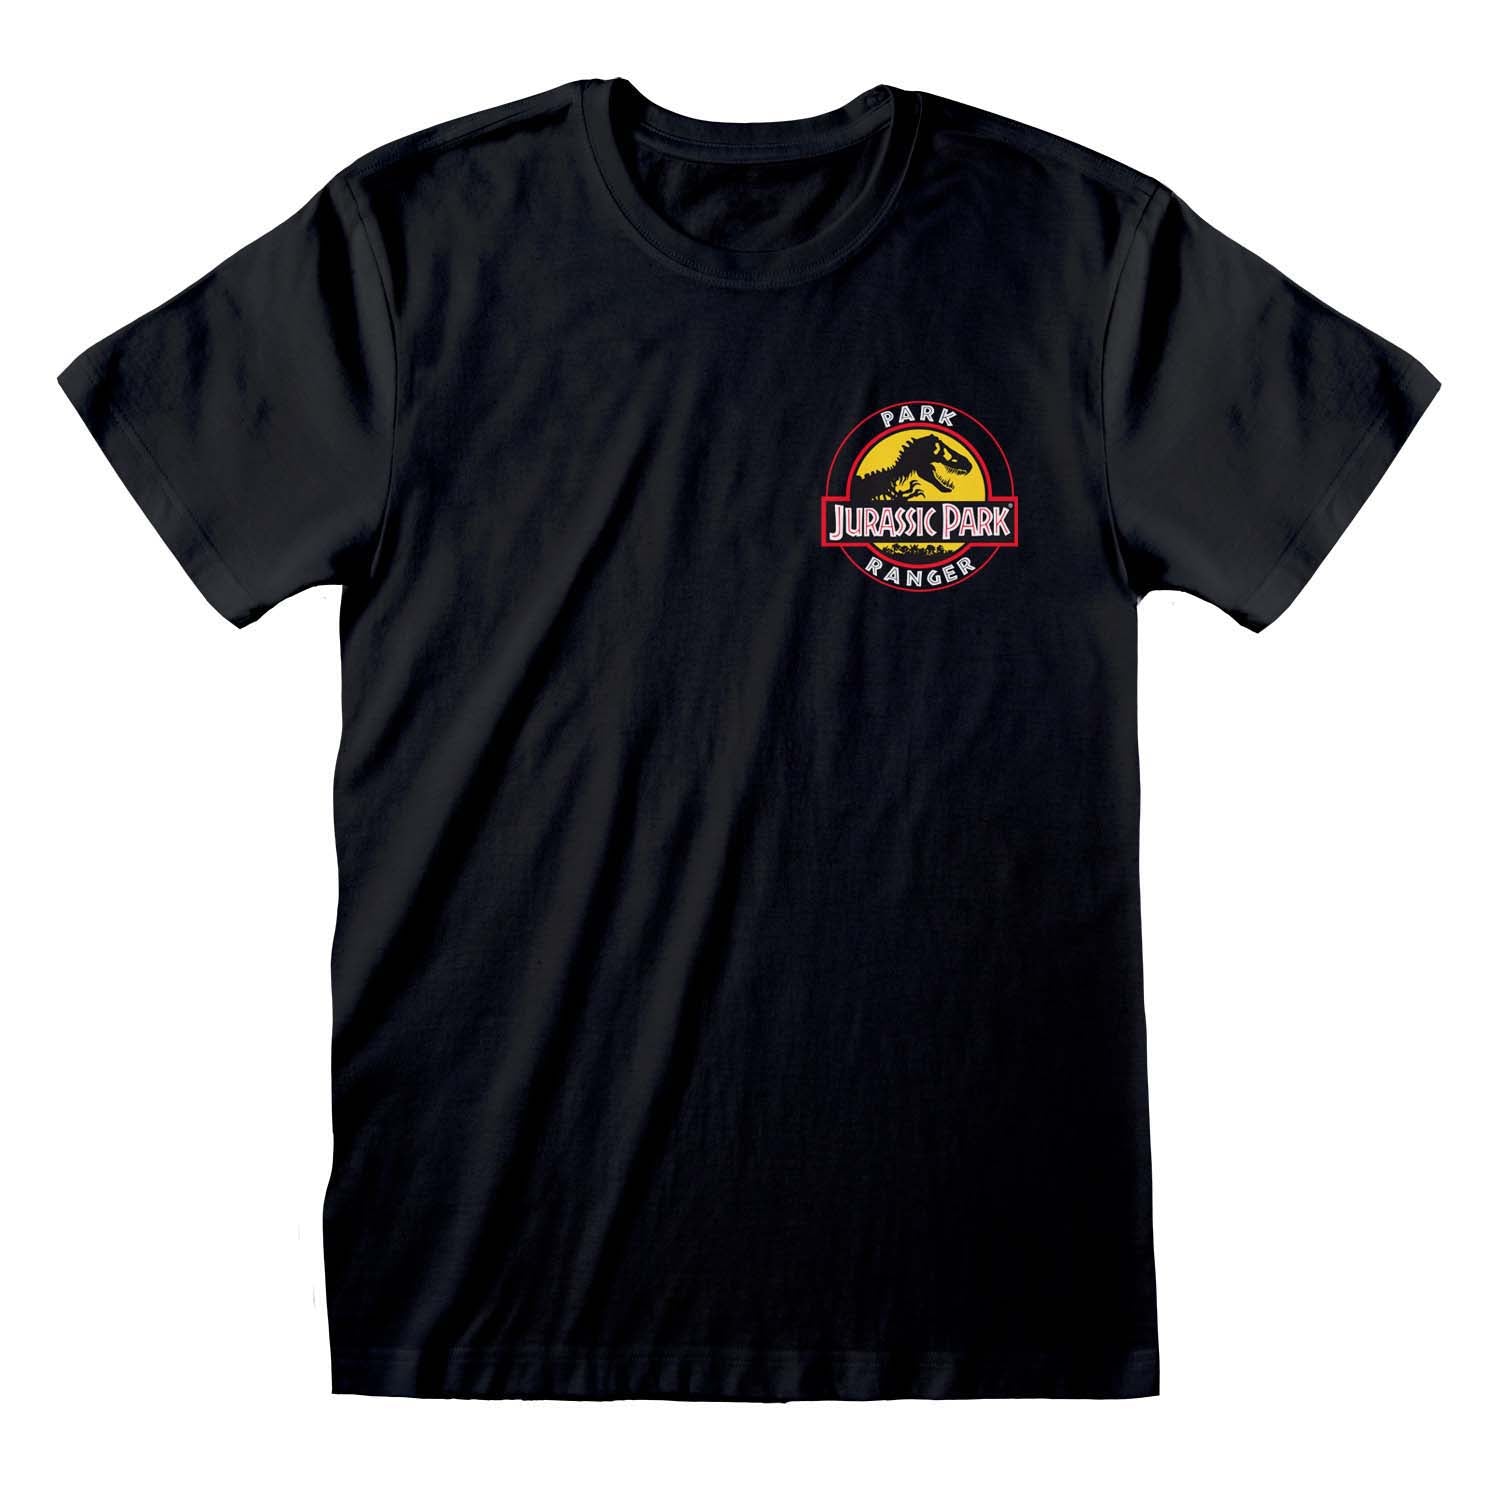 Jurassic Park Park Ranger T-Shirt